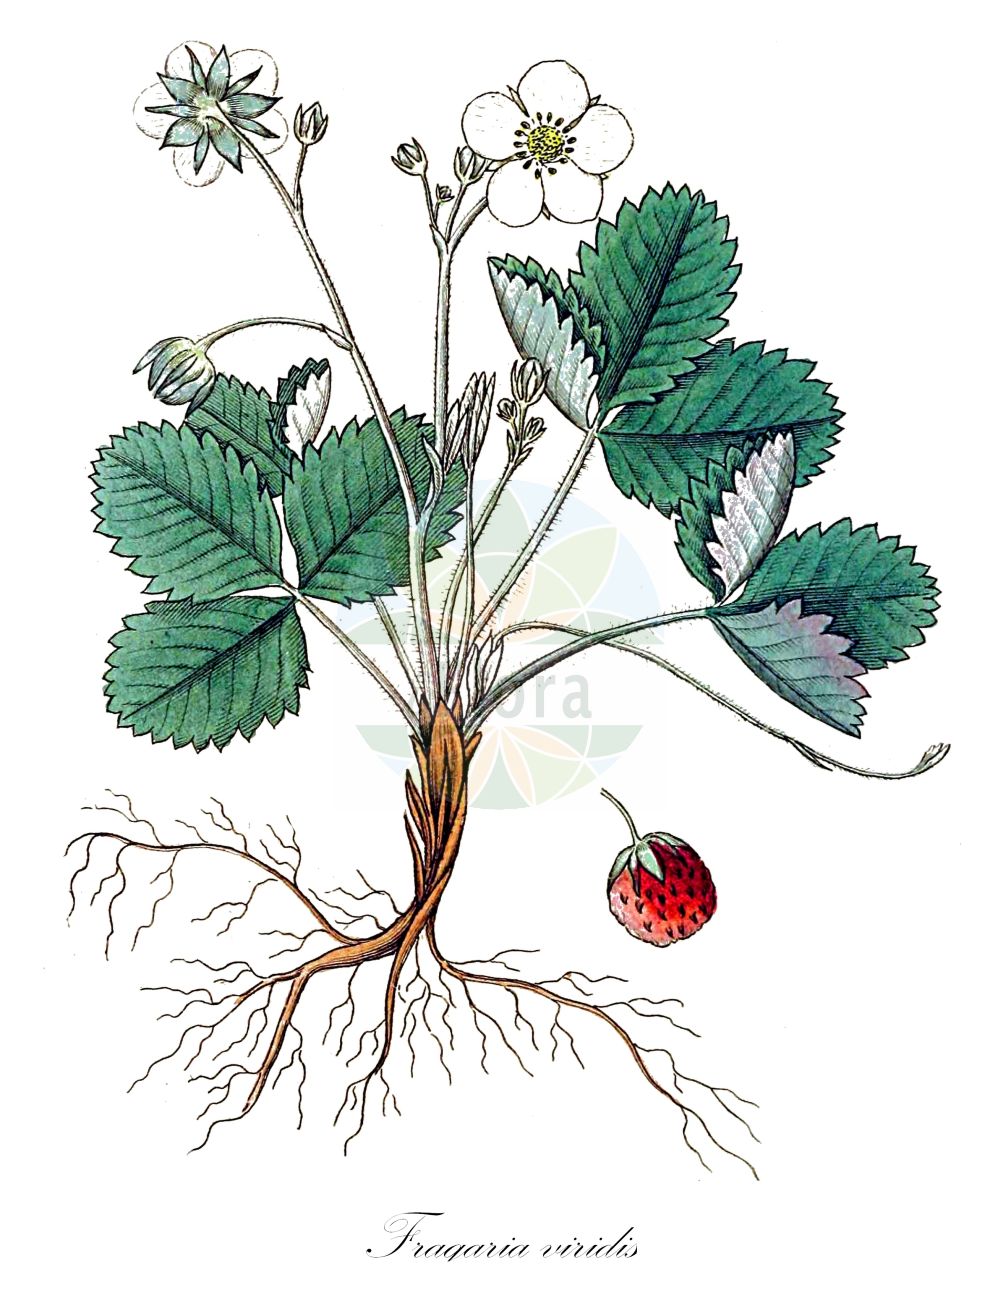 Historische Abbildung von Fragaria viridis (Hügel-Erbeere - Creamy Strawberry). Das Bild zeigt Blatt, Bluete, Frucht und Same. ---- Historical Drawing of Fragaria viridis (Hügel-Erbeere - Creamy Strawberry). The image is showing leaf, flower, fruit and seed.(Fragaria viridis,Hügel-Erbeere,Creamy Strawberry,Dactylophyllum ehrhartii,Fragaria bargea,Fragaria bifera,Fragaria breslingea,Fragaria calycina,Fragaria campana,Fragaria cerinoalba,Fragaria collina,Fragaria collivaga,Fragaria consobrina,Fragaria drymophila,Fragaria dumetorum,Fragaria heterophila,Fragaria majaufea,Fragaria nigra,Fragaria pistillaris,Fragaria rubricaulis,Fragaria silvulicola,Fragaria soyieriana,Fragaria suecica,Fragaria thomasiana,Fragaria viridis,Fragaria zapateriana,Huegel-Erbeere,Huegel-Erdbeere,Knackbeere,Creamy Strawberry,Green Strawberry,Fragaria,Erdbeere,Strawberry,Rosaceae,Rosengewächse,Rose family,Blatt,Bluete,Frucht,Same,leaf,flower,fruit,seed,Svensk Botanik (Svensk Botanik))